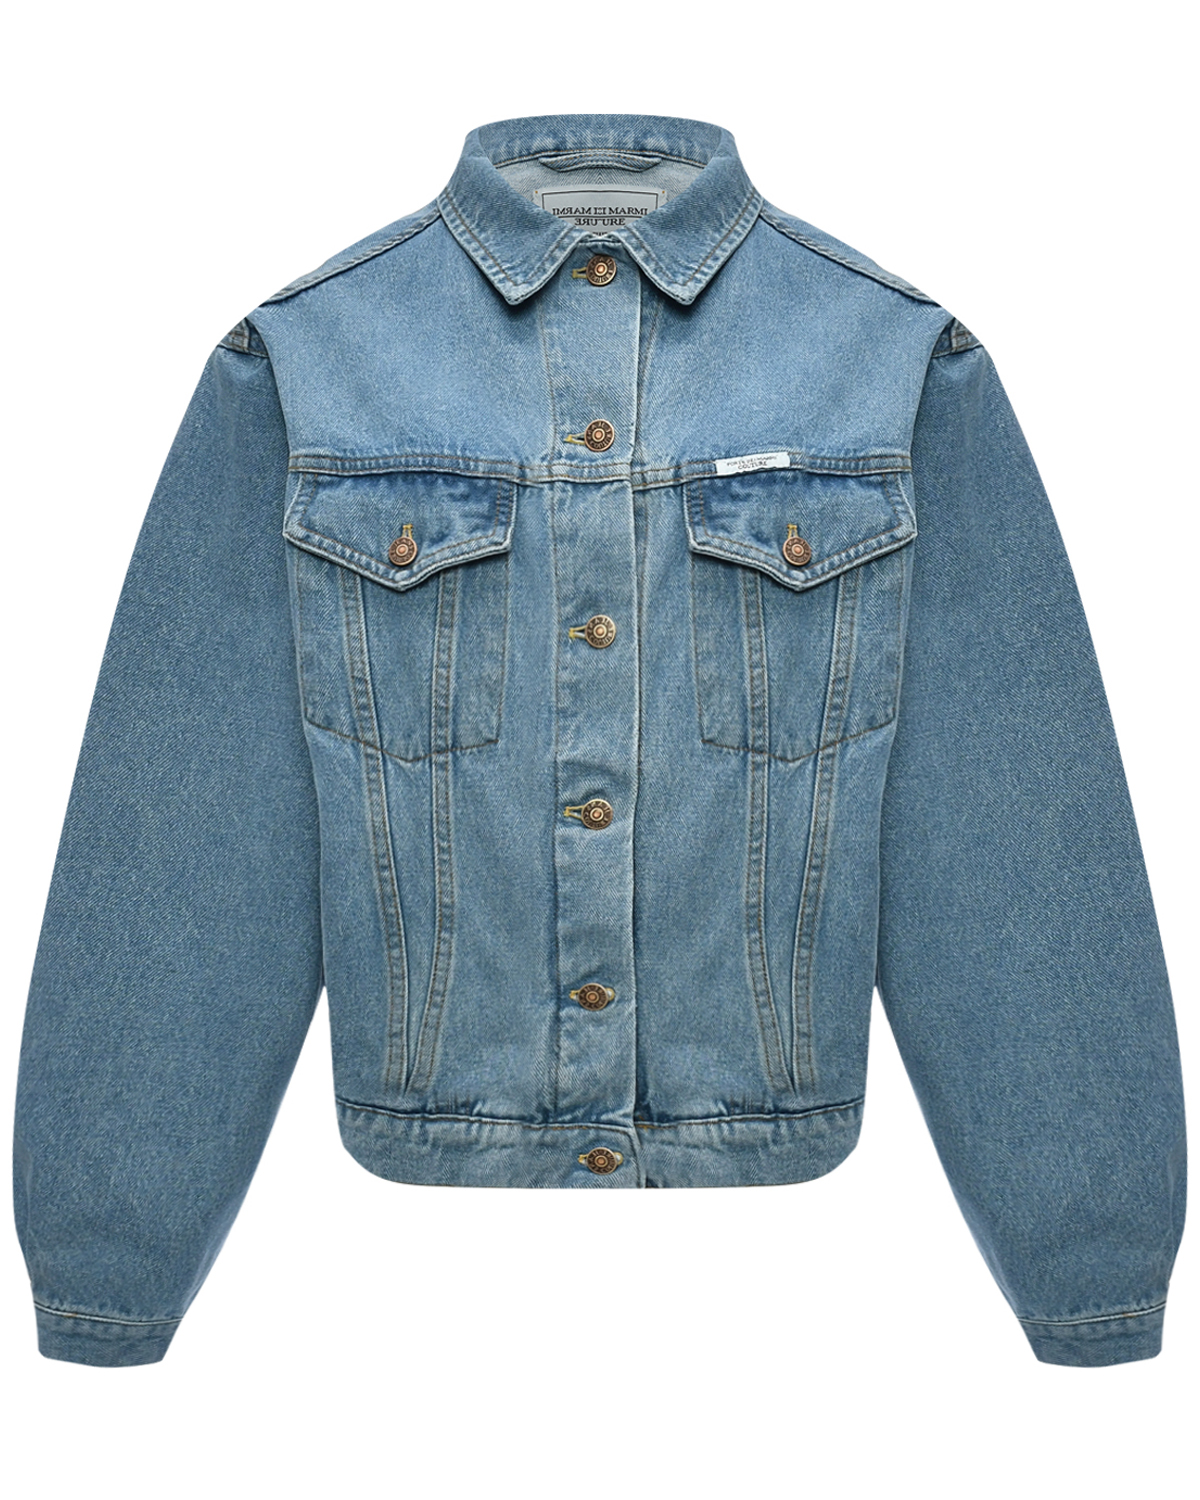 Джинсовая куртка с надписью Forte из стразов Forte dei Marmi Couture, размер 42, цвет синий